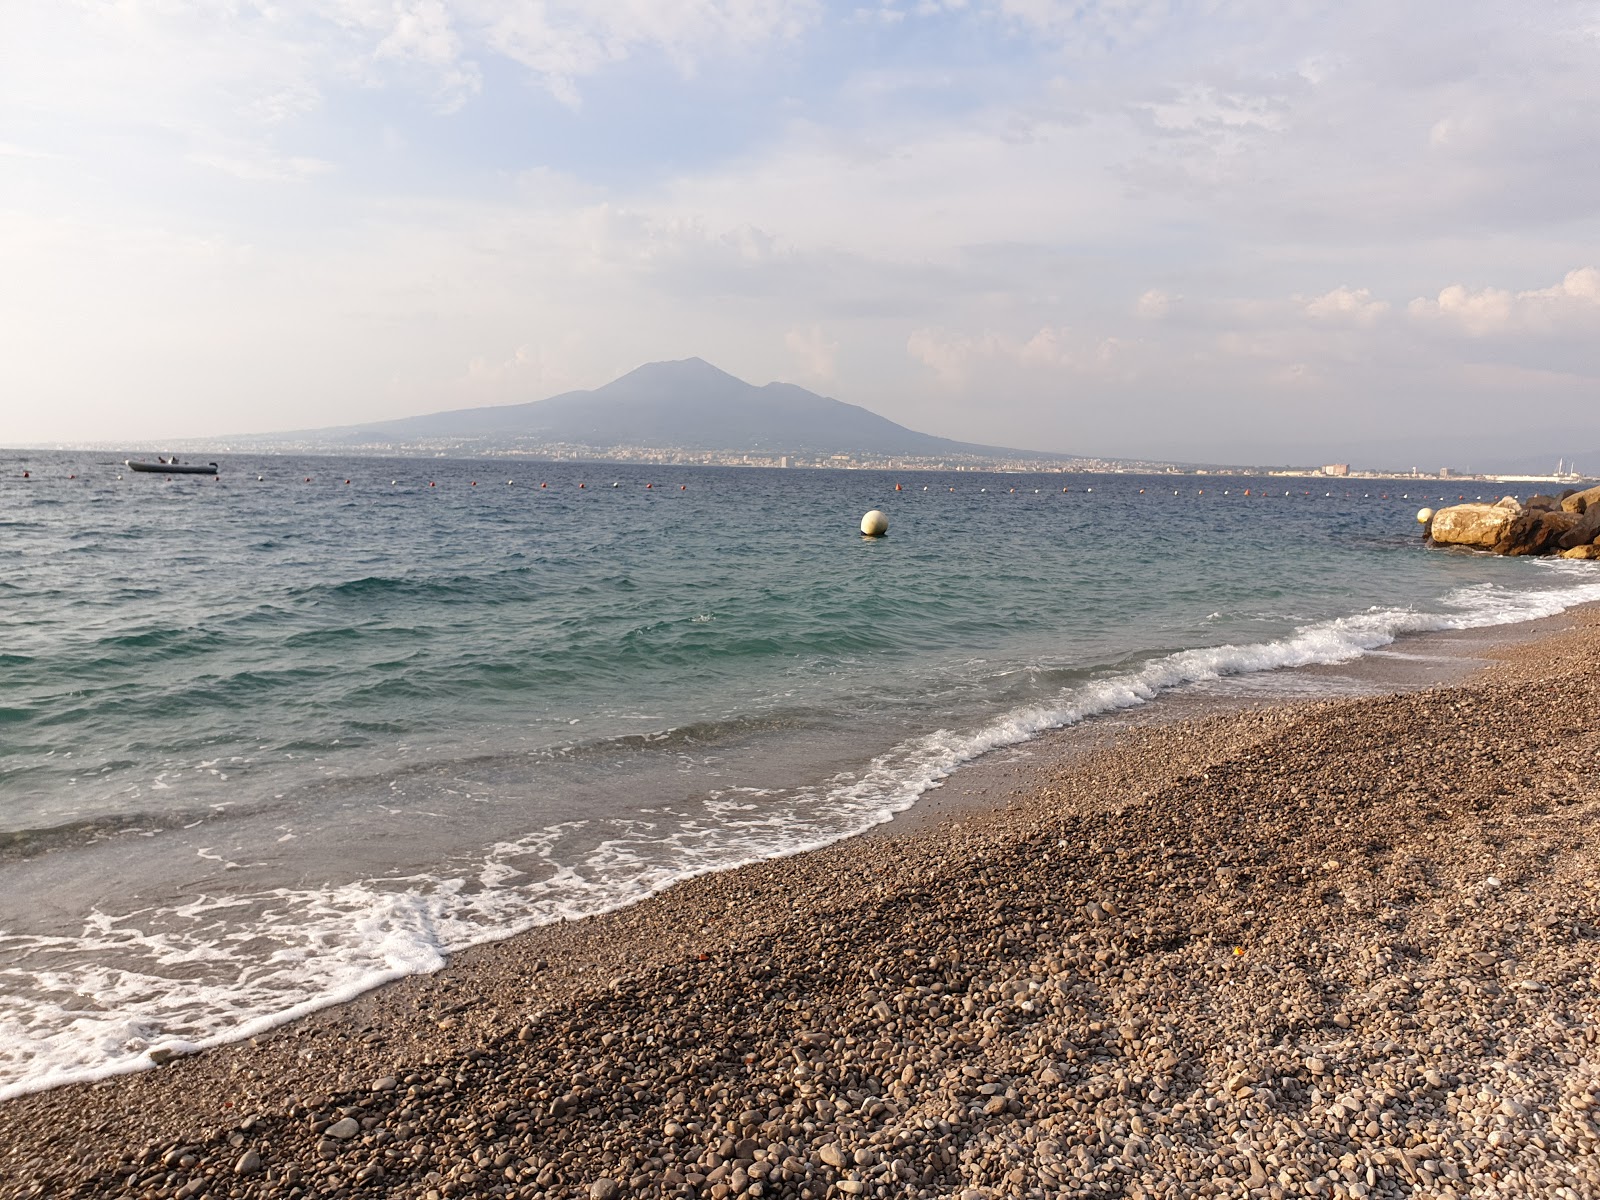 Zdjęcie Pozzano beach z powierzchnią niebieska woda